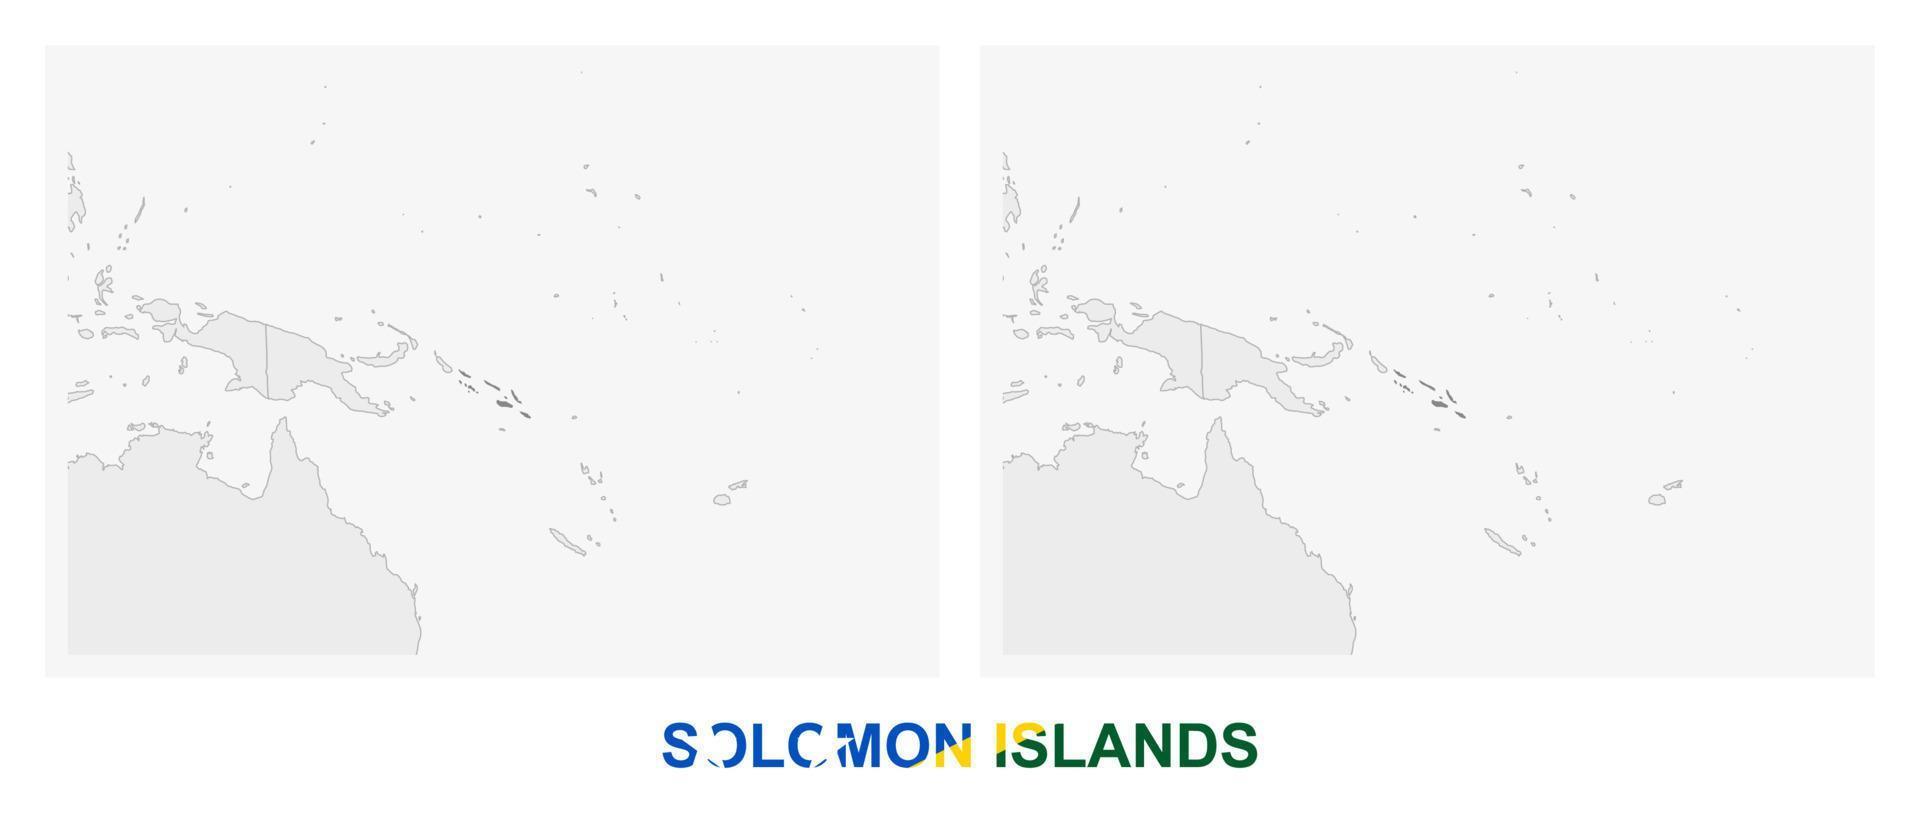 deux versions de la carte des îles salomon, avec le drapeau des îles salomon et surlignées en gris foncé. vecteur